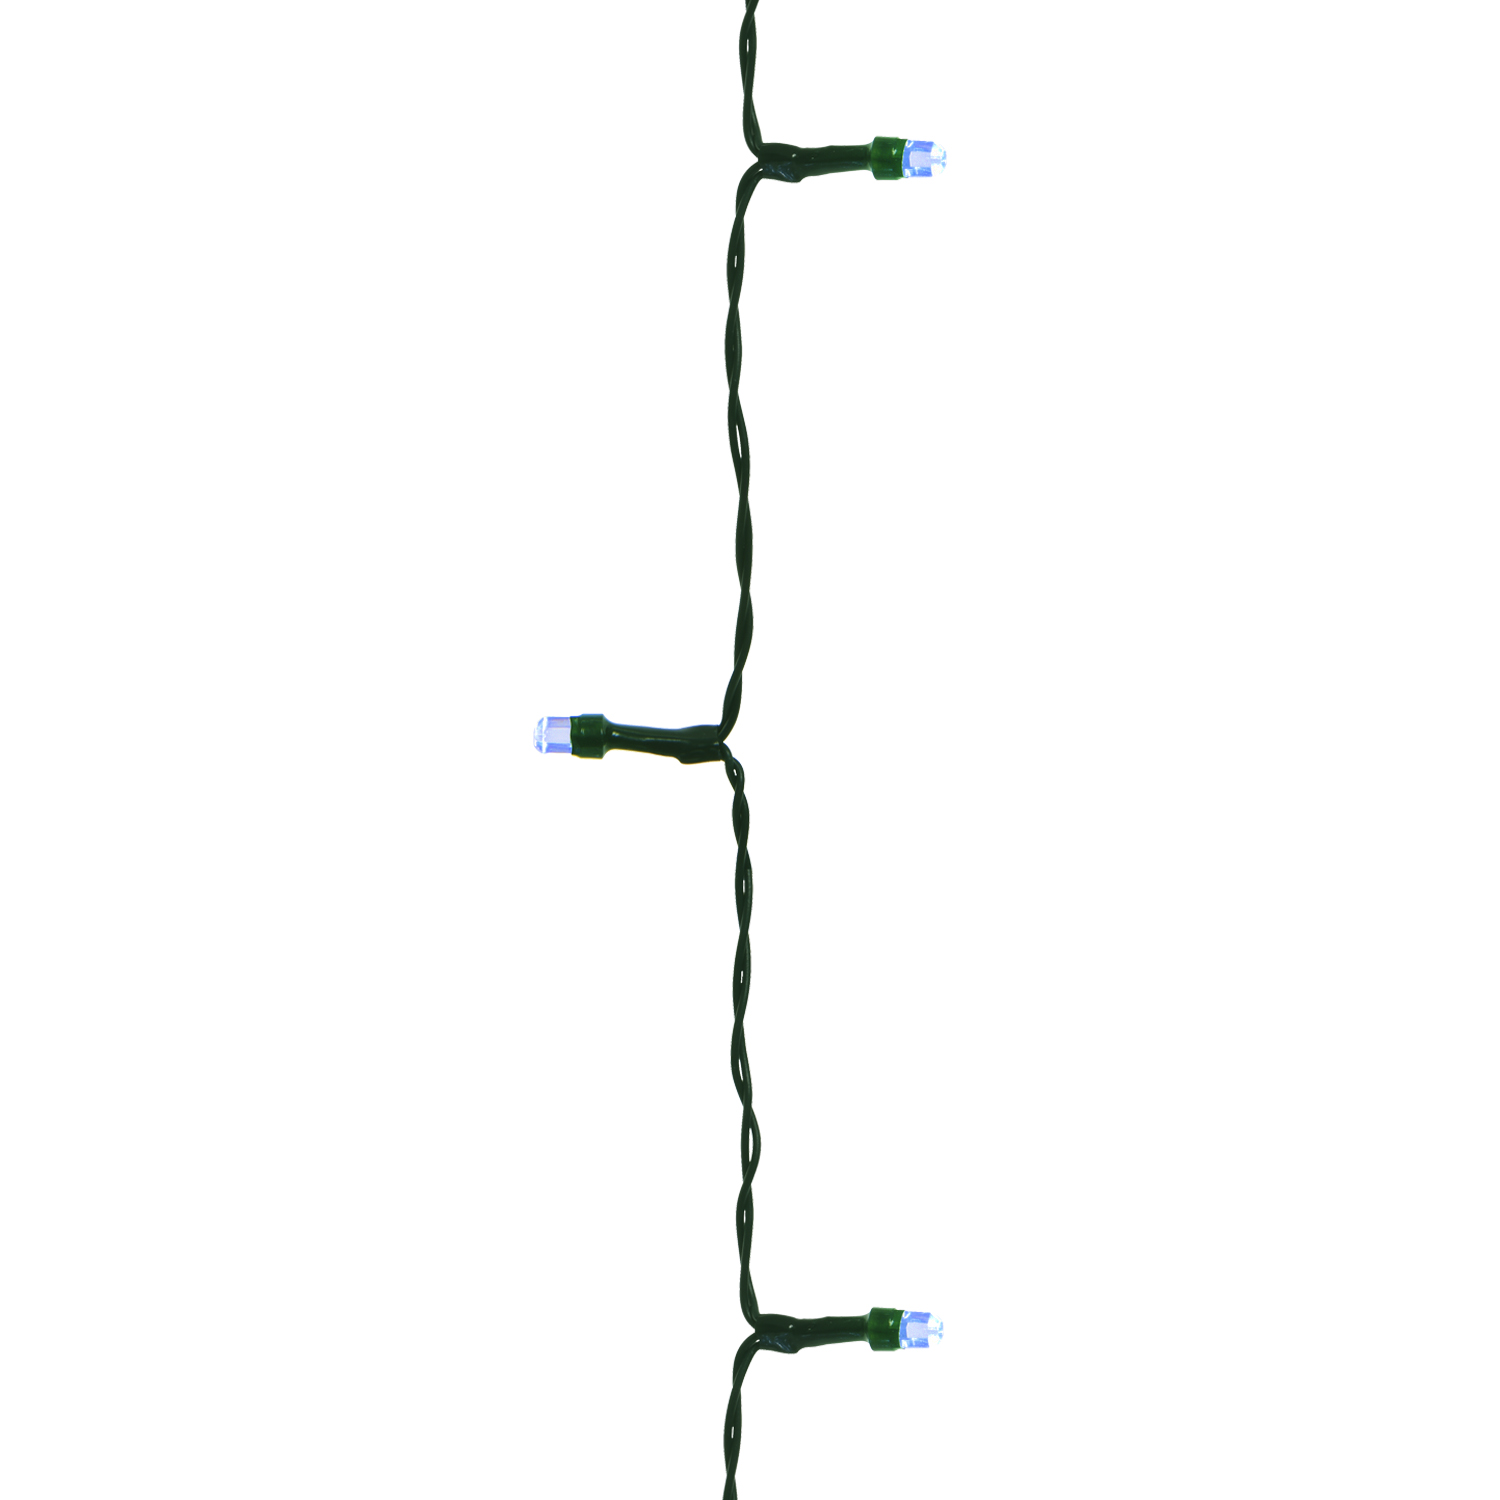 Гирлянда 20м холоднобелая Алмазные огни кабель зеленый 5м 200диодов LED 8 функций 8ч таймер outdoor